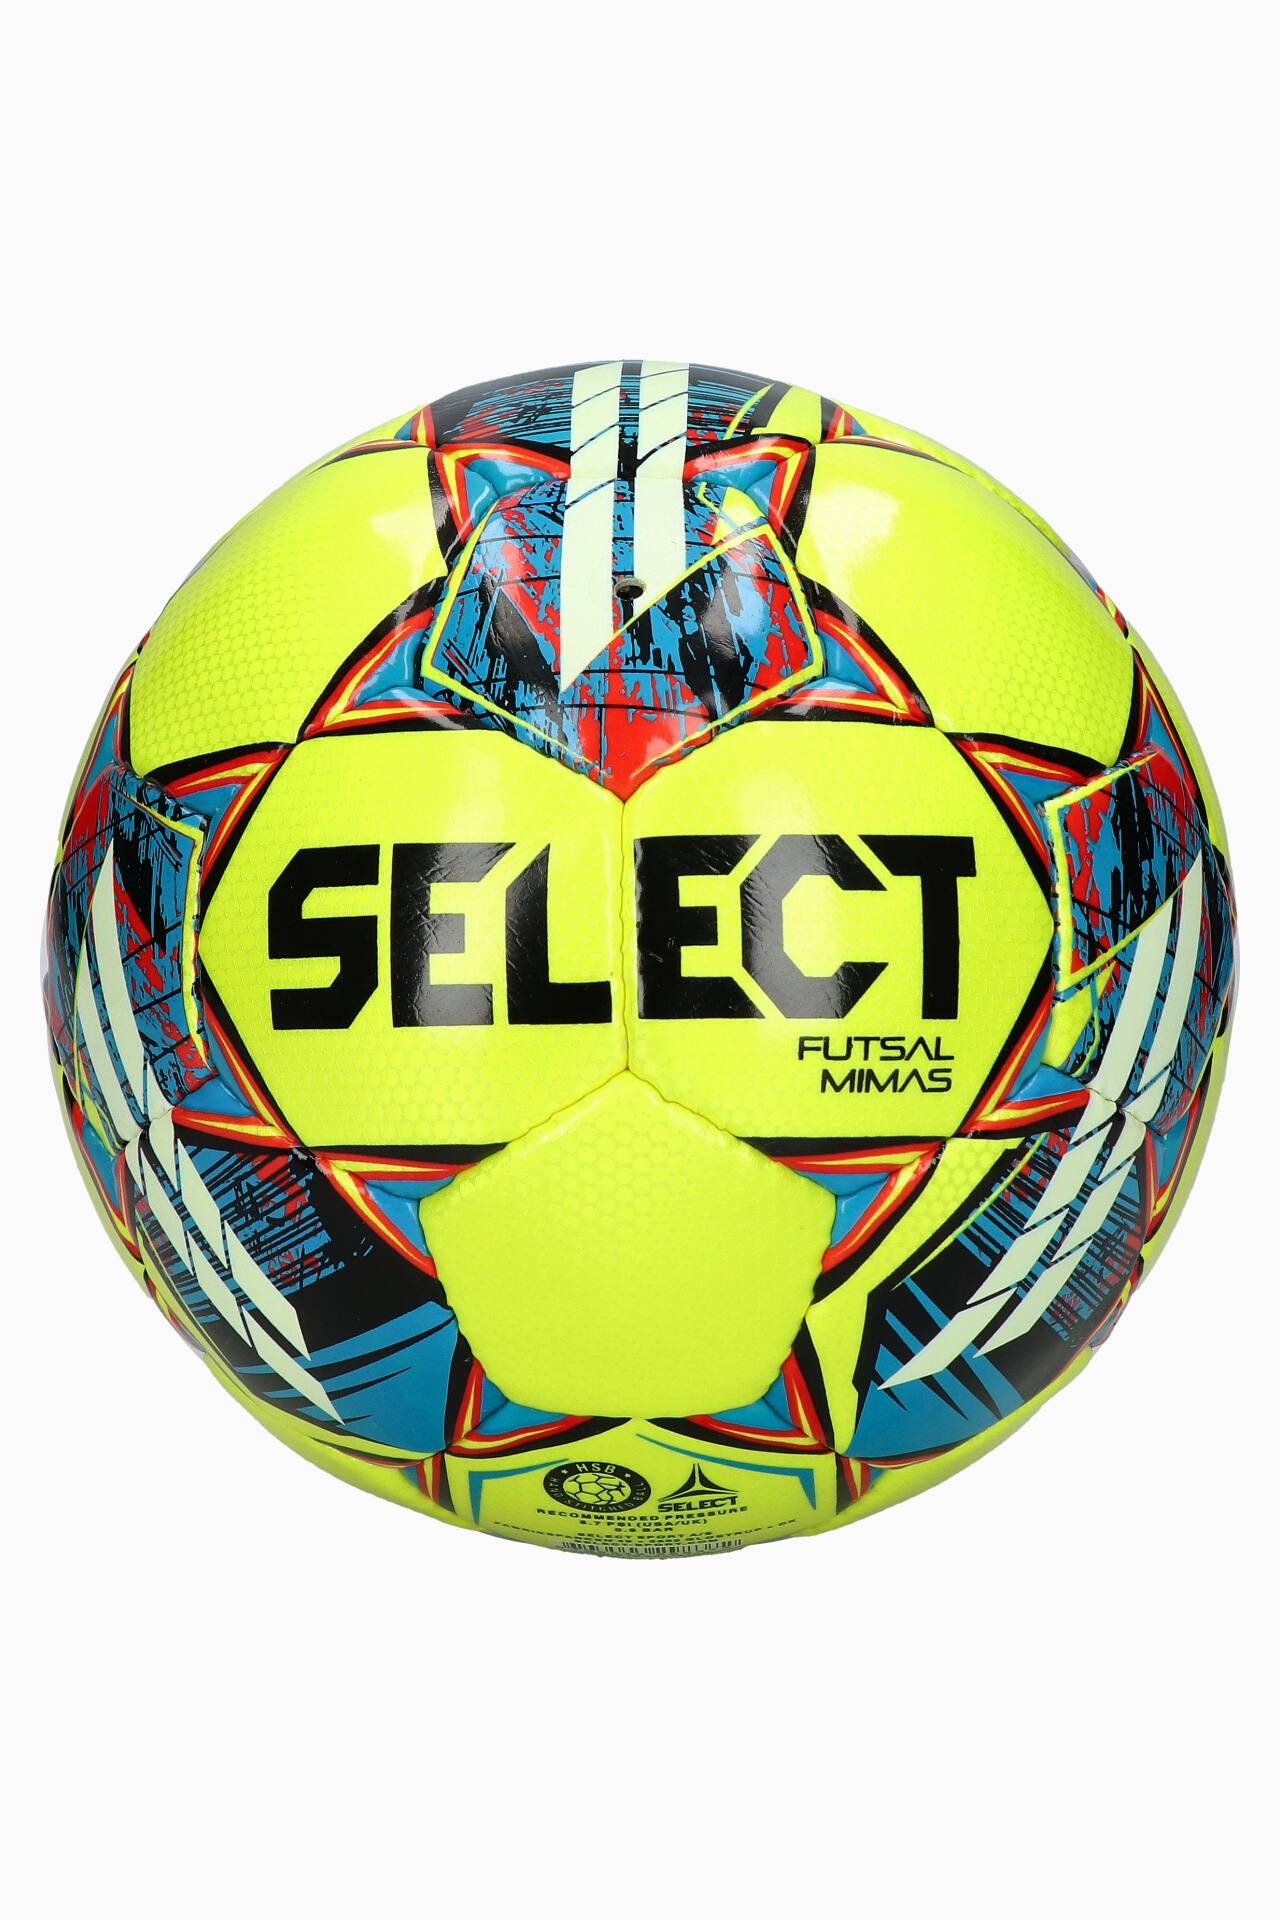 Football Select Futsal v22 | - Football boots & equipment